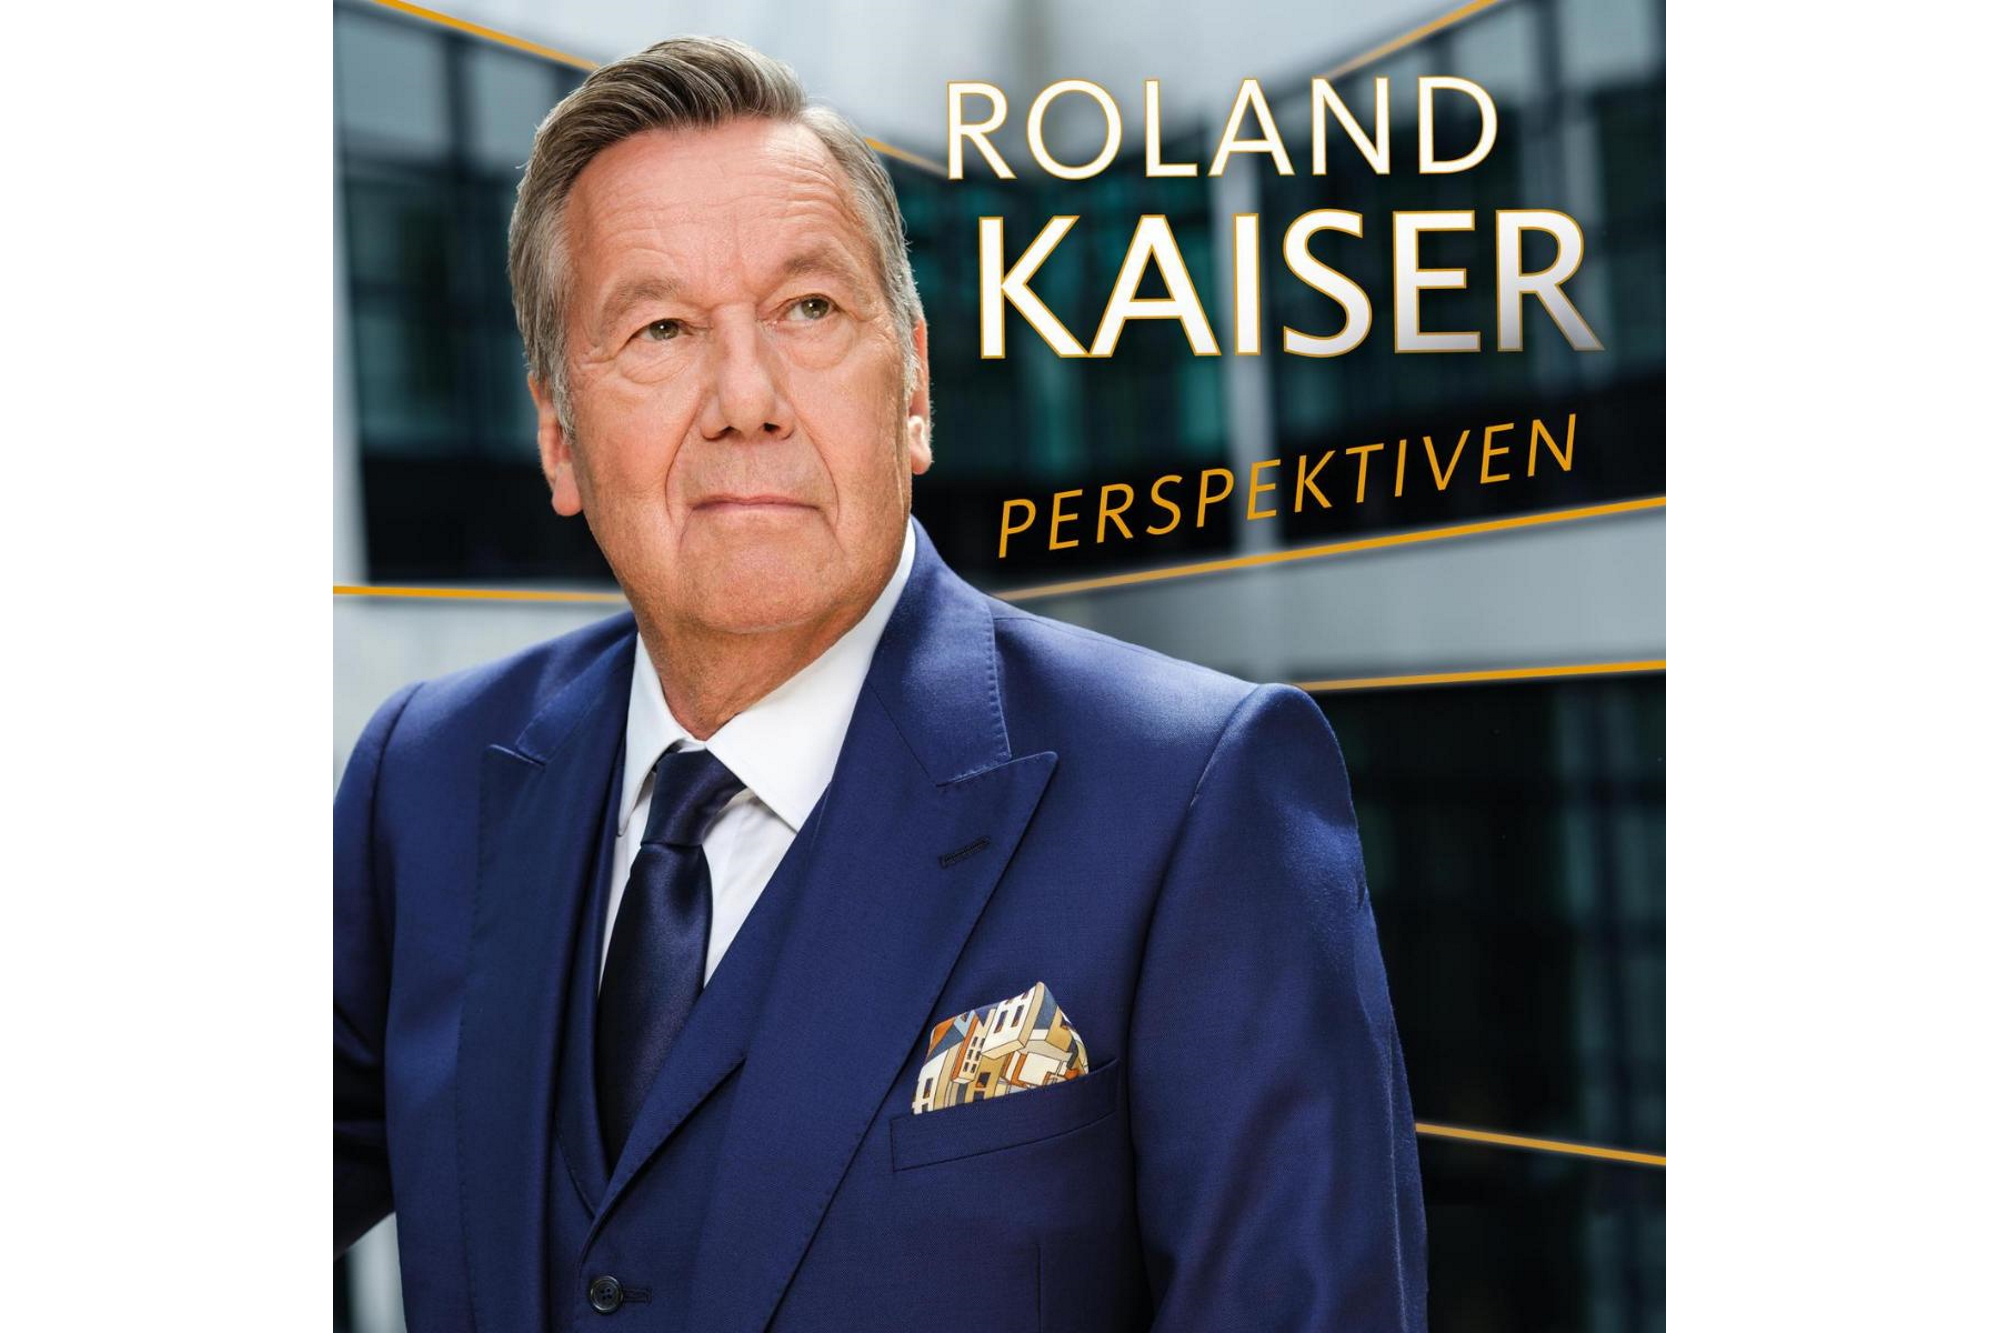 Roland Kaiser - Perspektiven